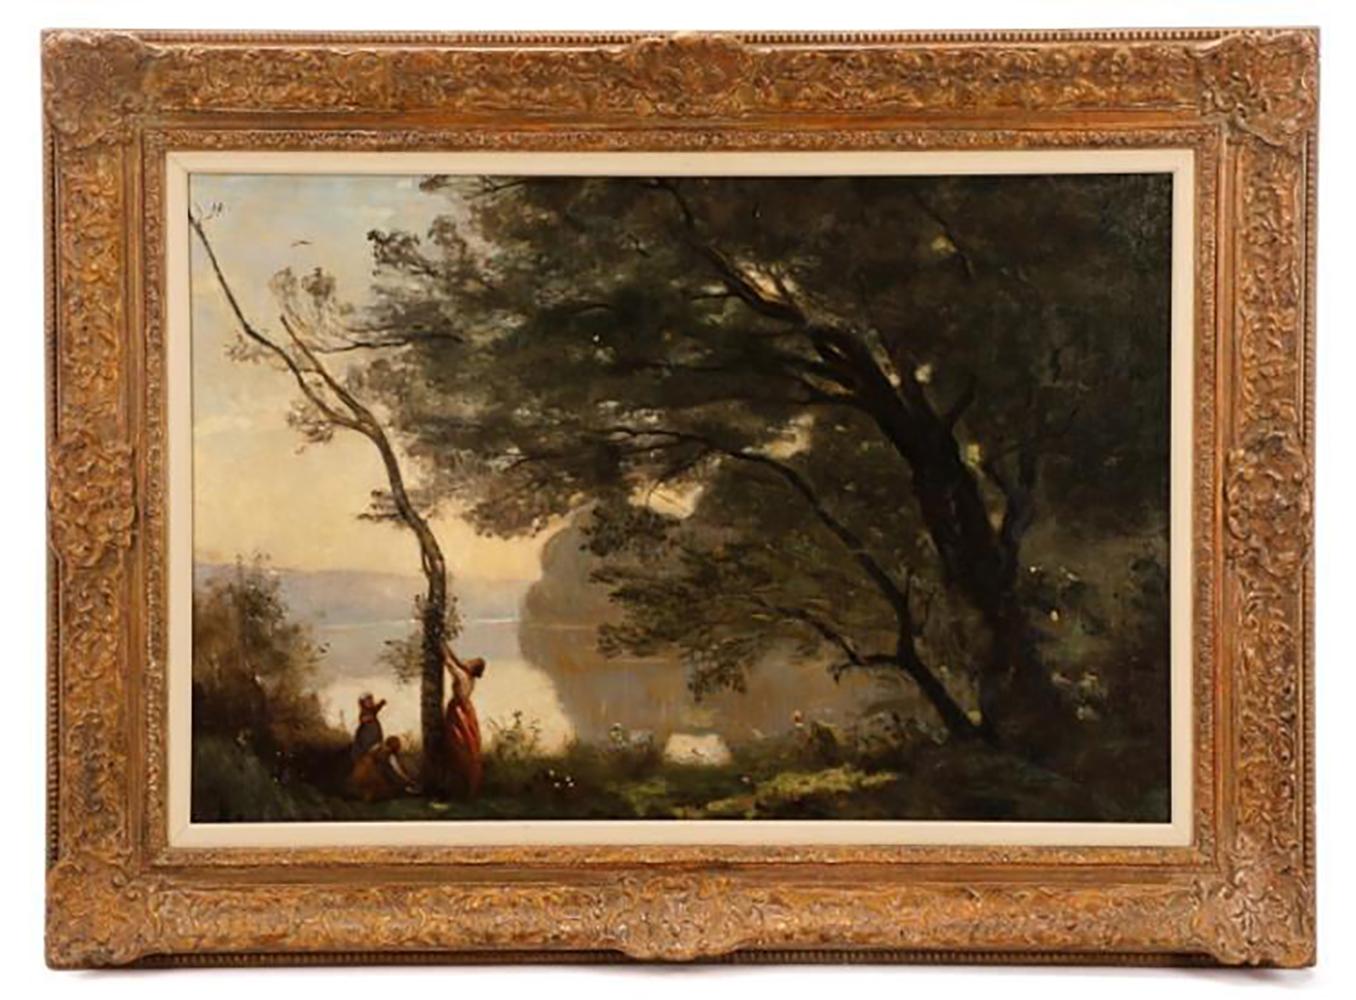 (after) Jean-Baptiste-Camille Corot Landscape Painting - 19th C. Entitled "Souvenir de Mortefontaine", after Jean-Baptiste Camille Corot